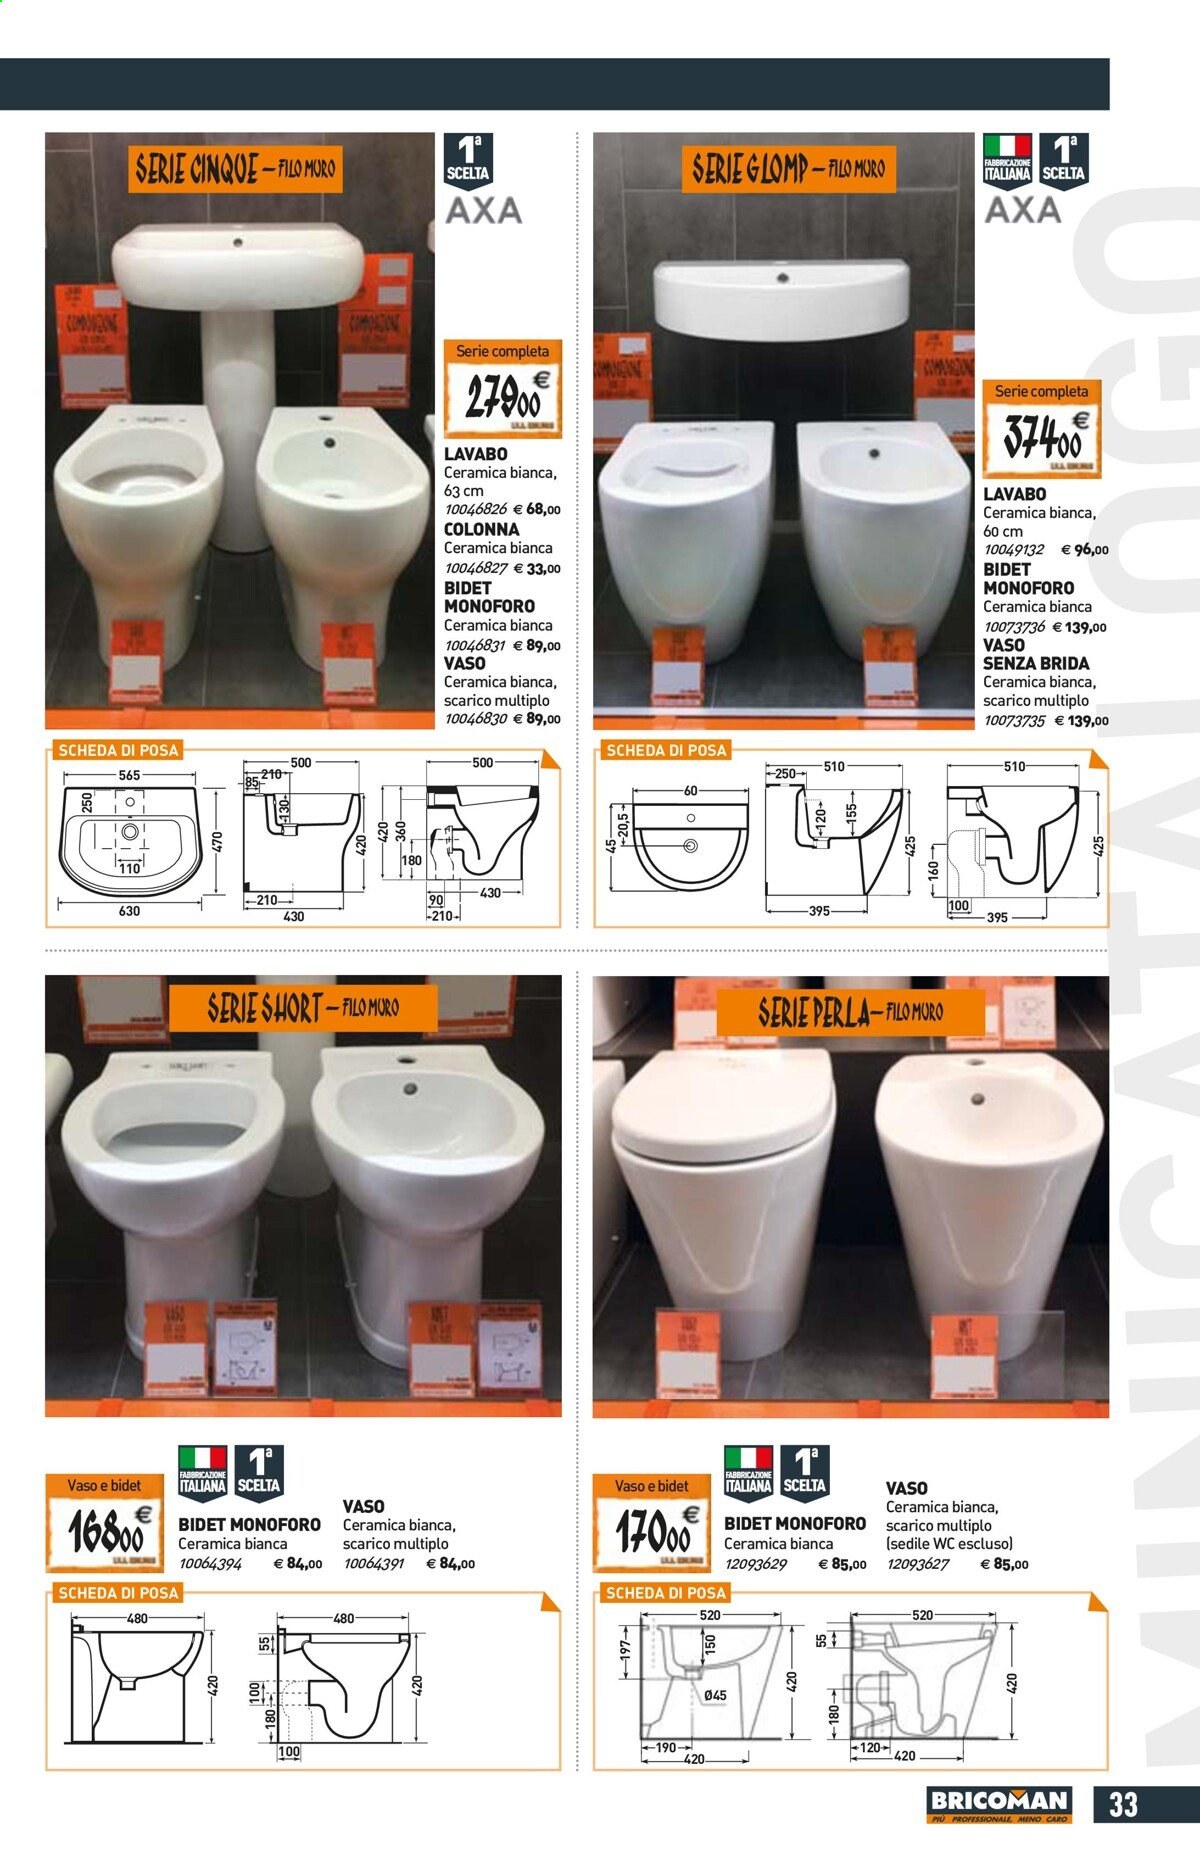 Volantino Bricoman - 24/6/2021 - 28/7/2021 - Prodotti in offerta - bidet monoforo, sedile WC, vaso, bidet, vaso in ceramica. Pagina 33.